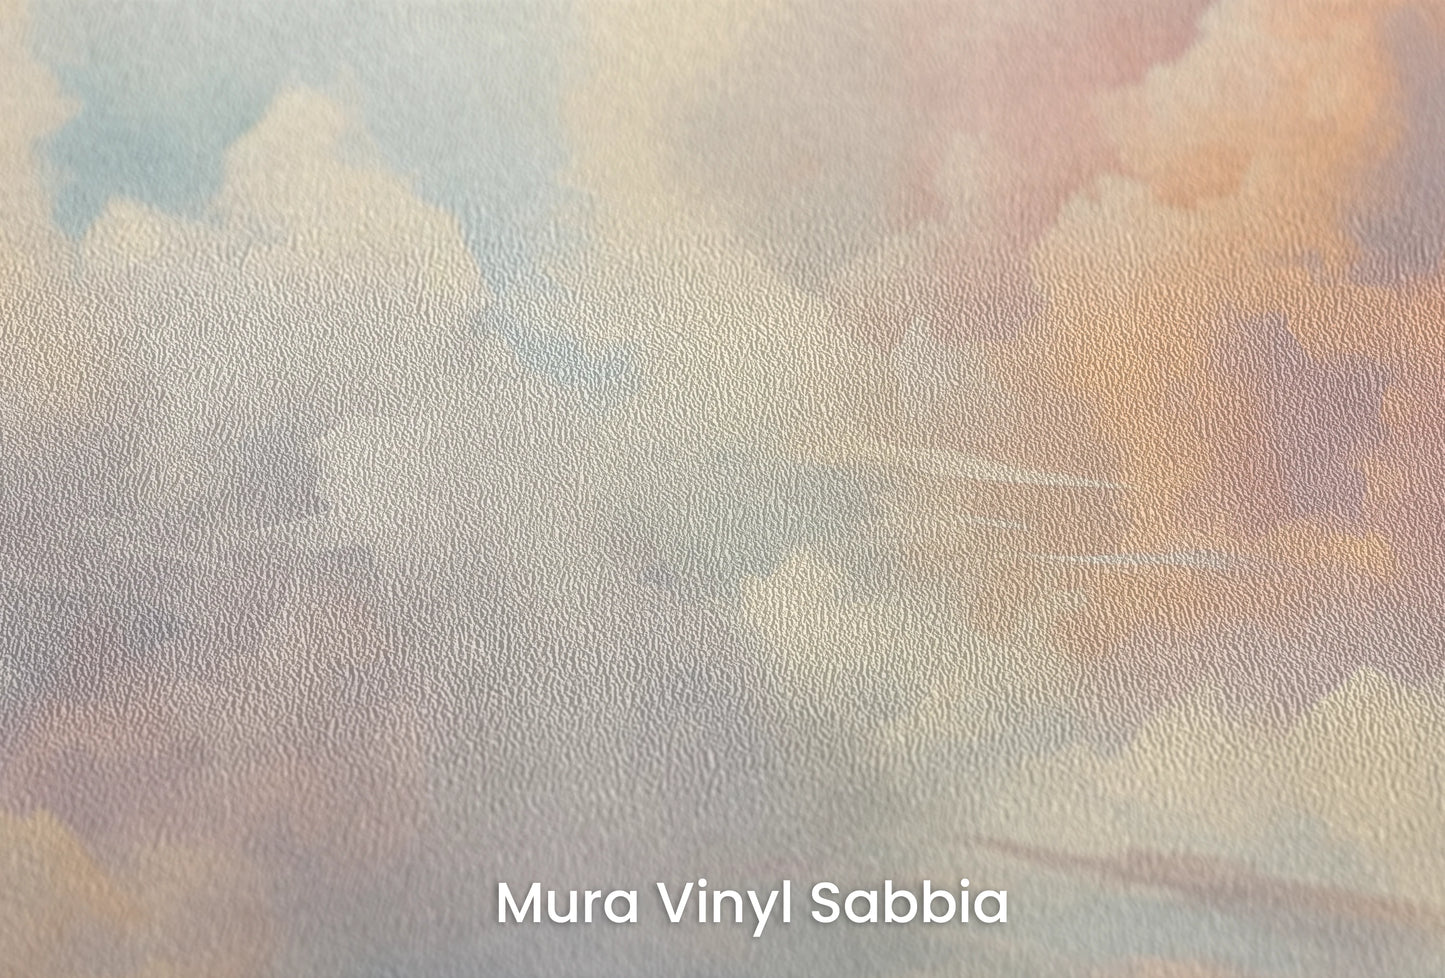 Zbliżenie na artystyczną fototapetę o nazwie Serene Skies na podłożu Mura Vinyl Sabbia struktura grubego ziarna piasku.